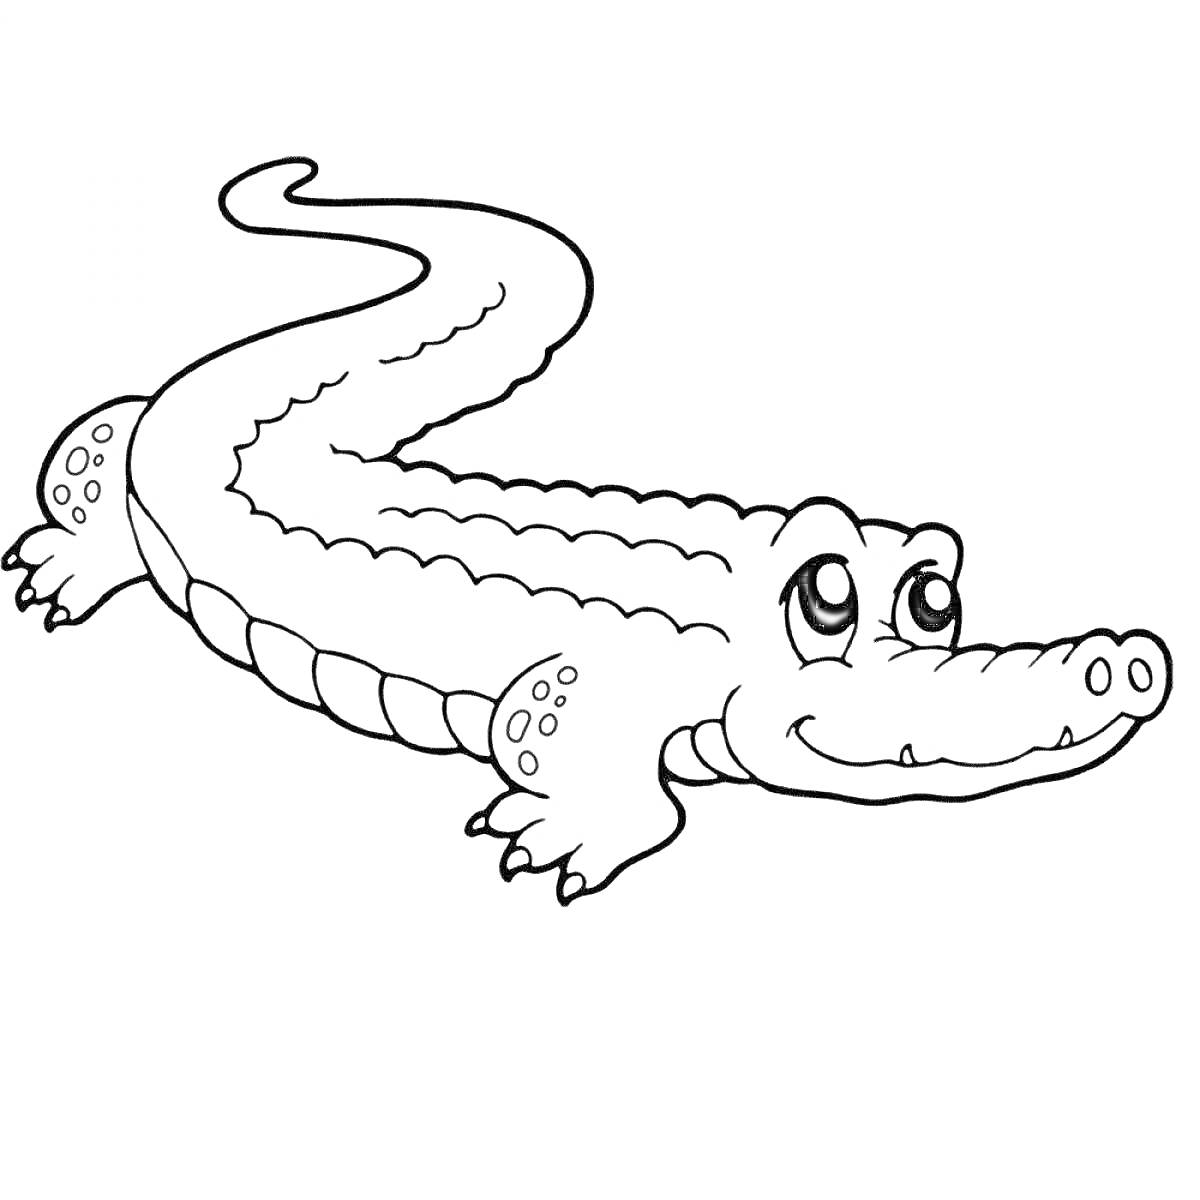 Раскраска Крокодил с большими глазами и улыбкой